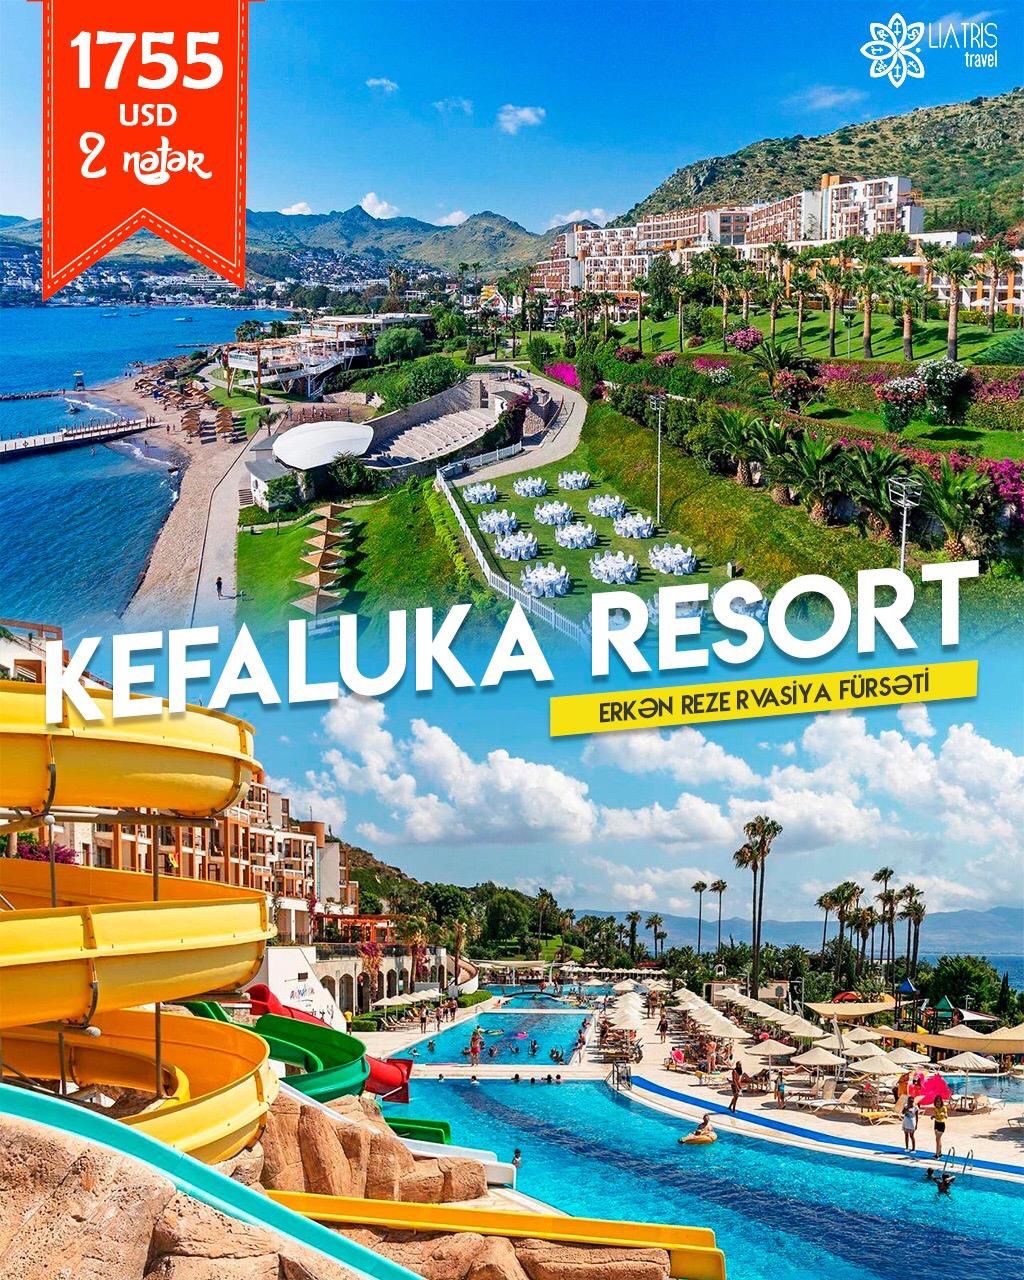 Kefaluka Resort 5* otelinə erkən rezervasiya fürsəti!